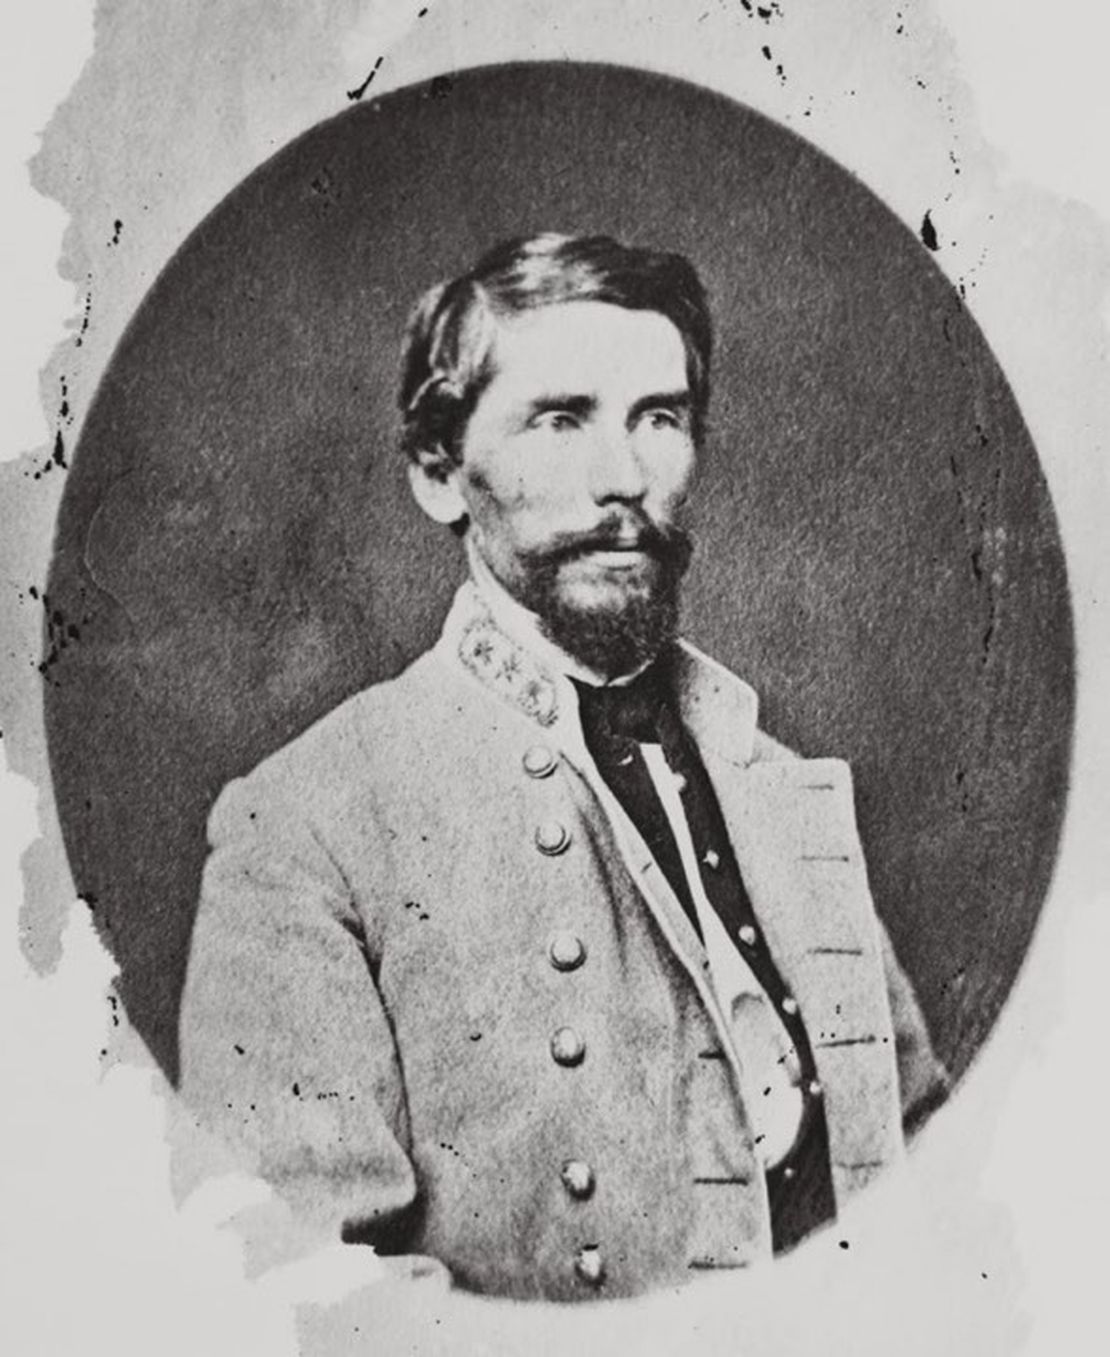 Patrick Cleburne, American Civil War Confederate General, is born in Cobh, Co. Cork